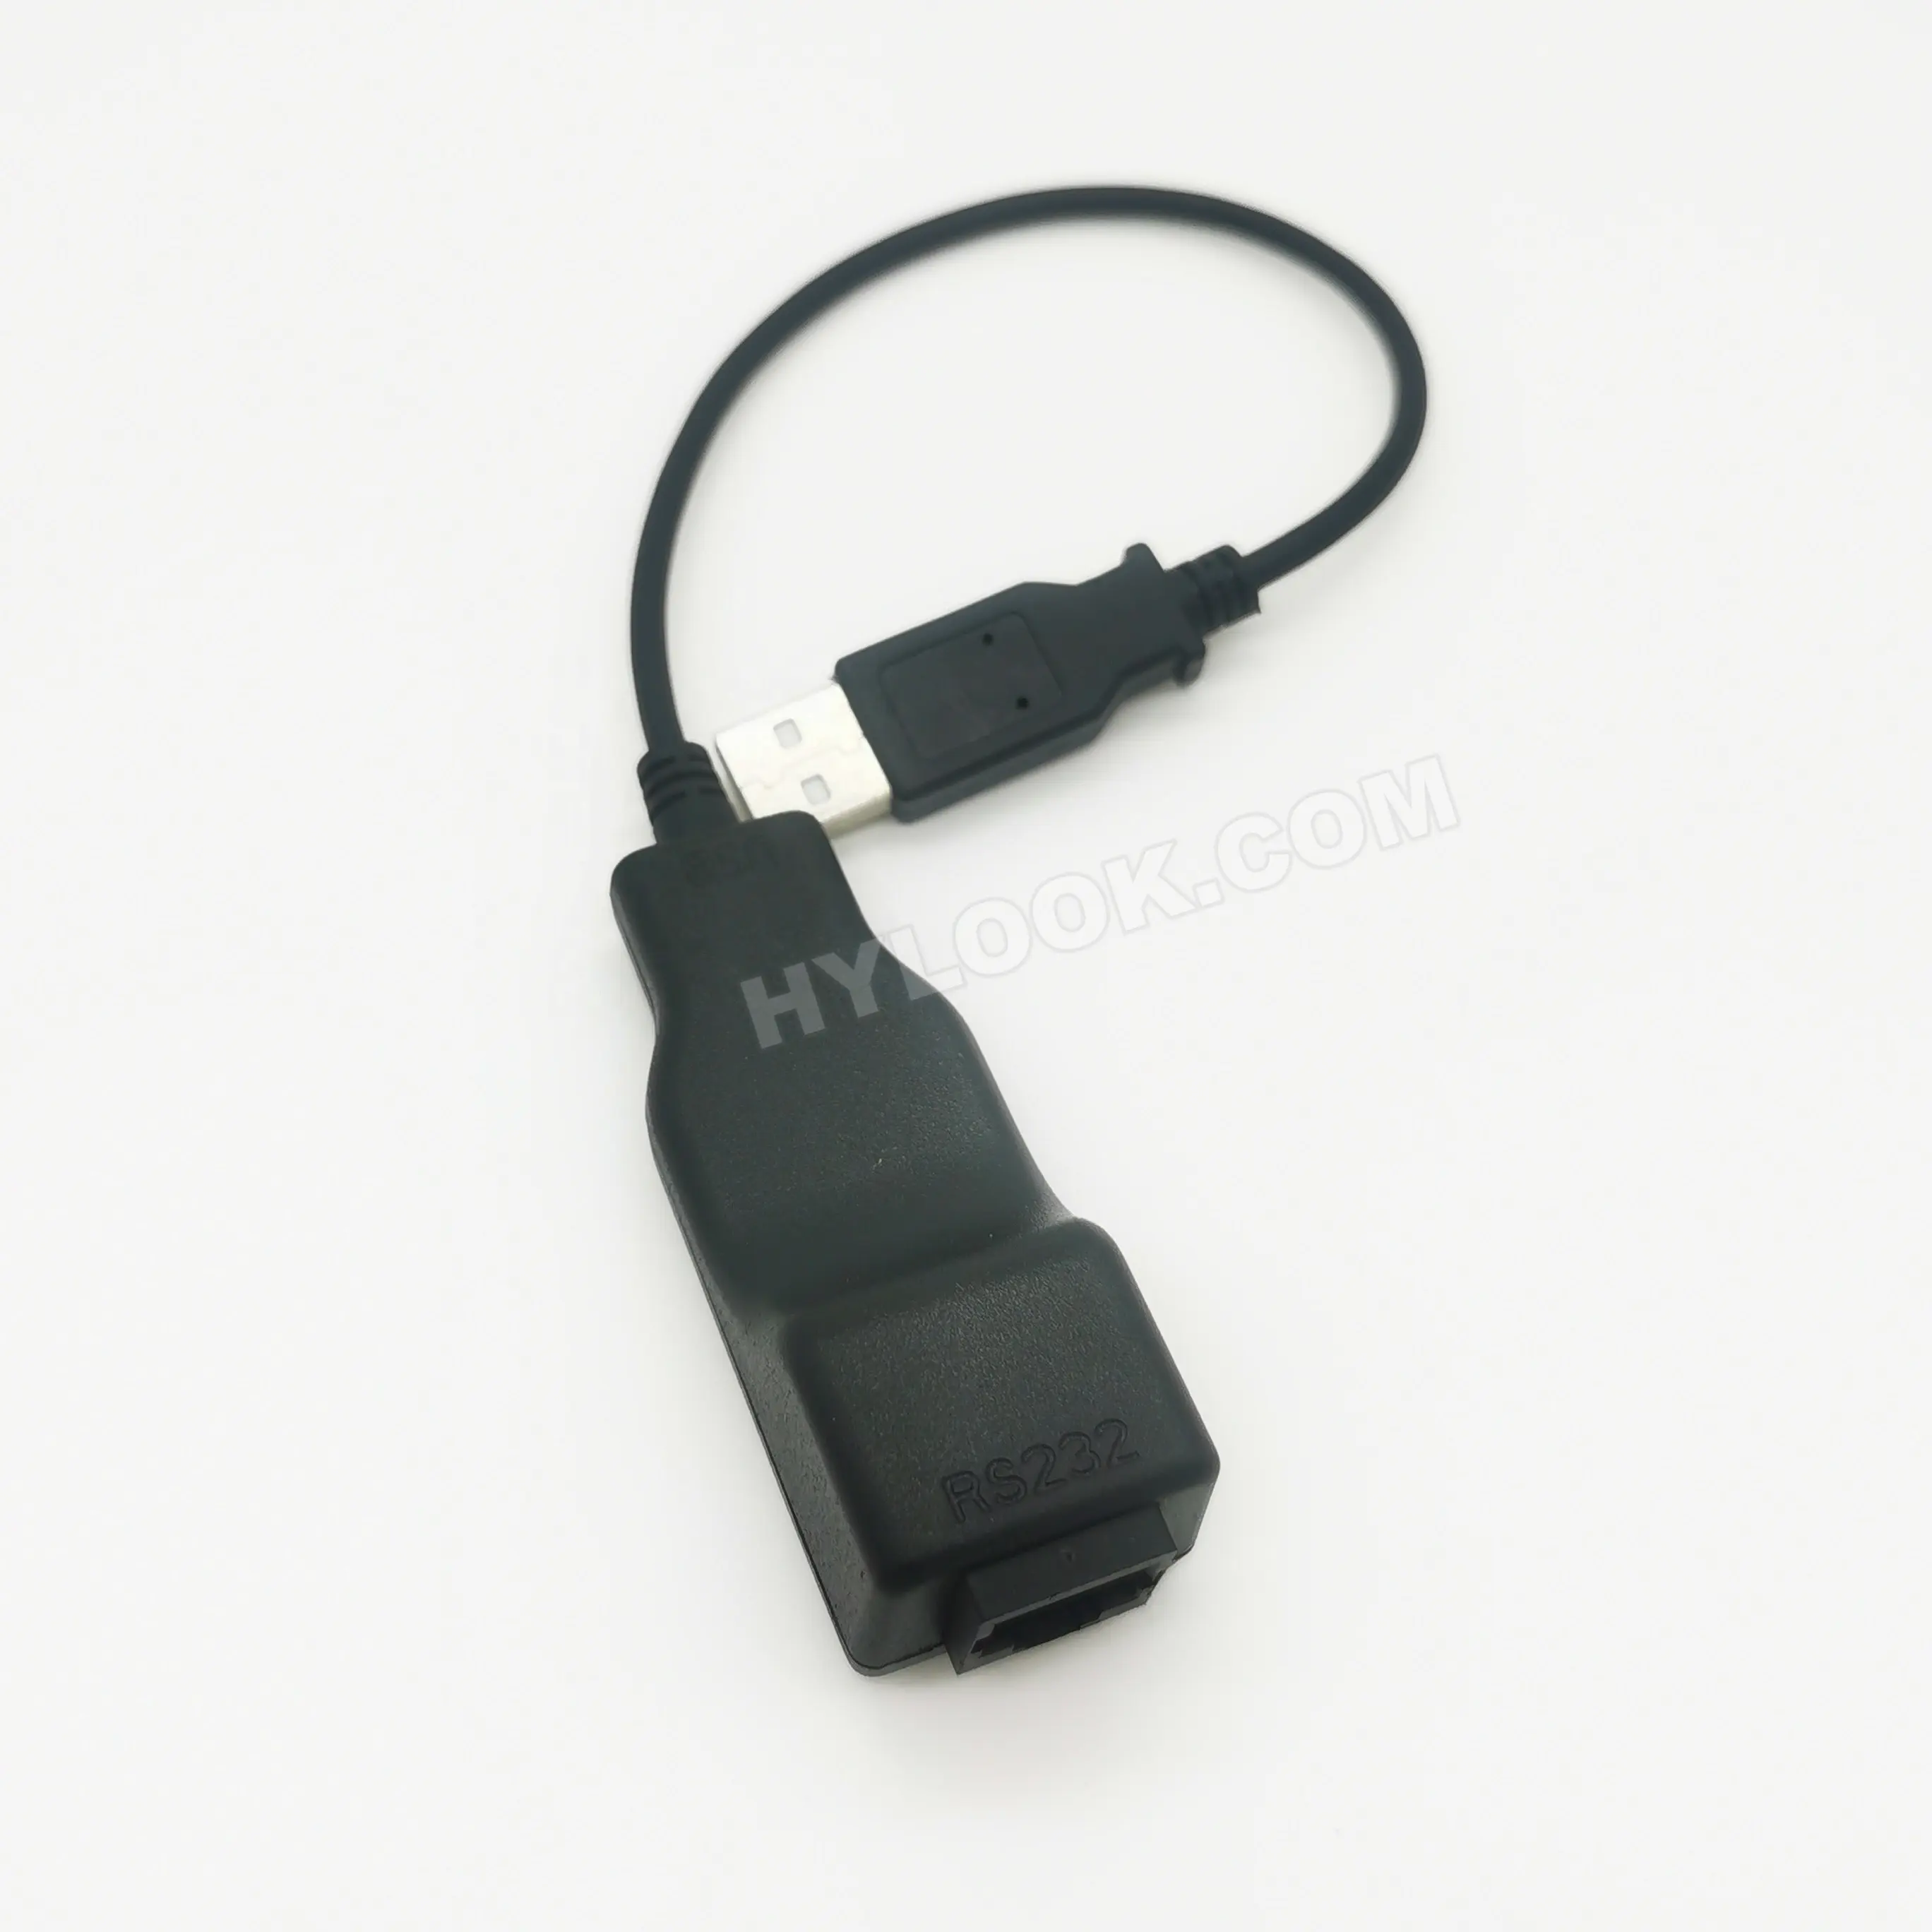 Cabo Conversor USB RS232 para Verifone Vx520 08798-02-R